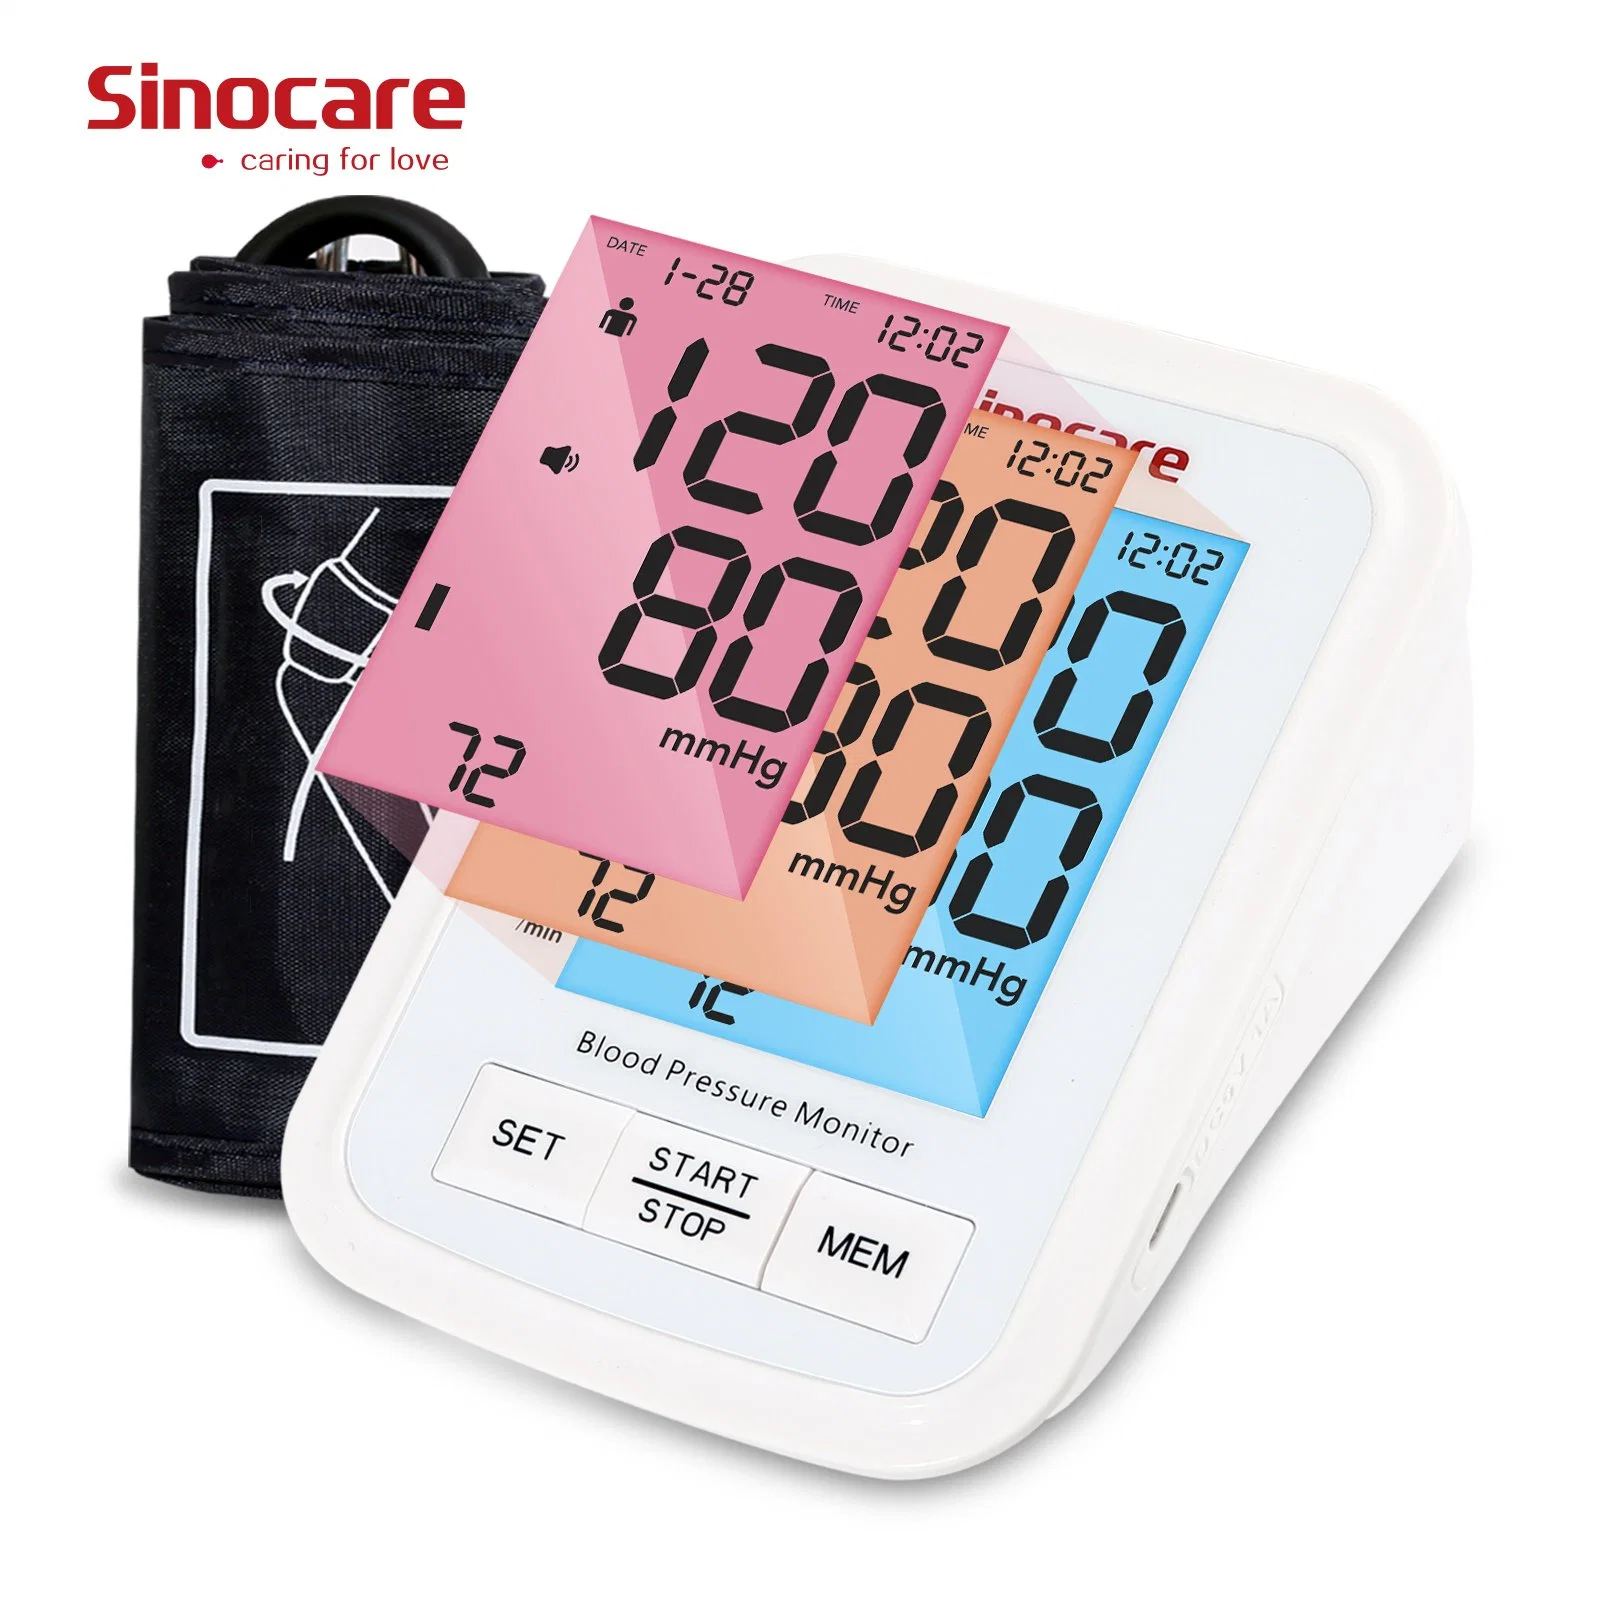 مراقبة ضغط الدم في سينوكare مراقبة ضغط الدم من قبل OEM مراقبة ضغط الدم المواطن تلقائياً شاشة ضغط الدم الرقمي مع شاشة LED منحنية